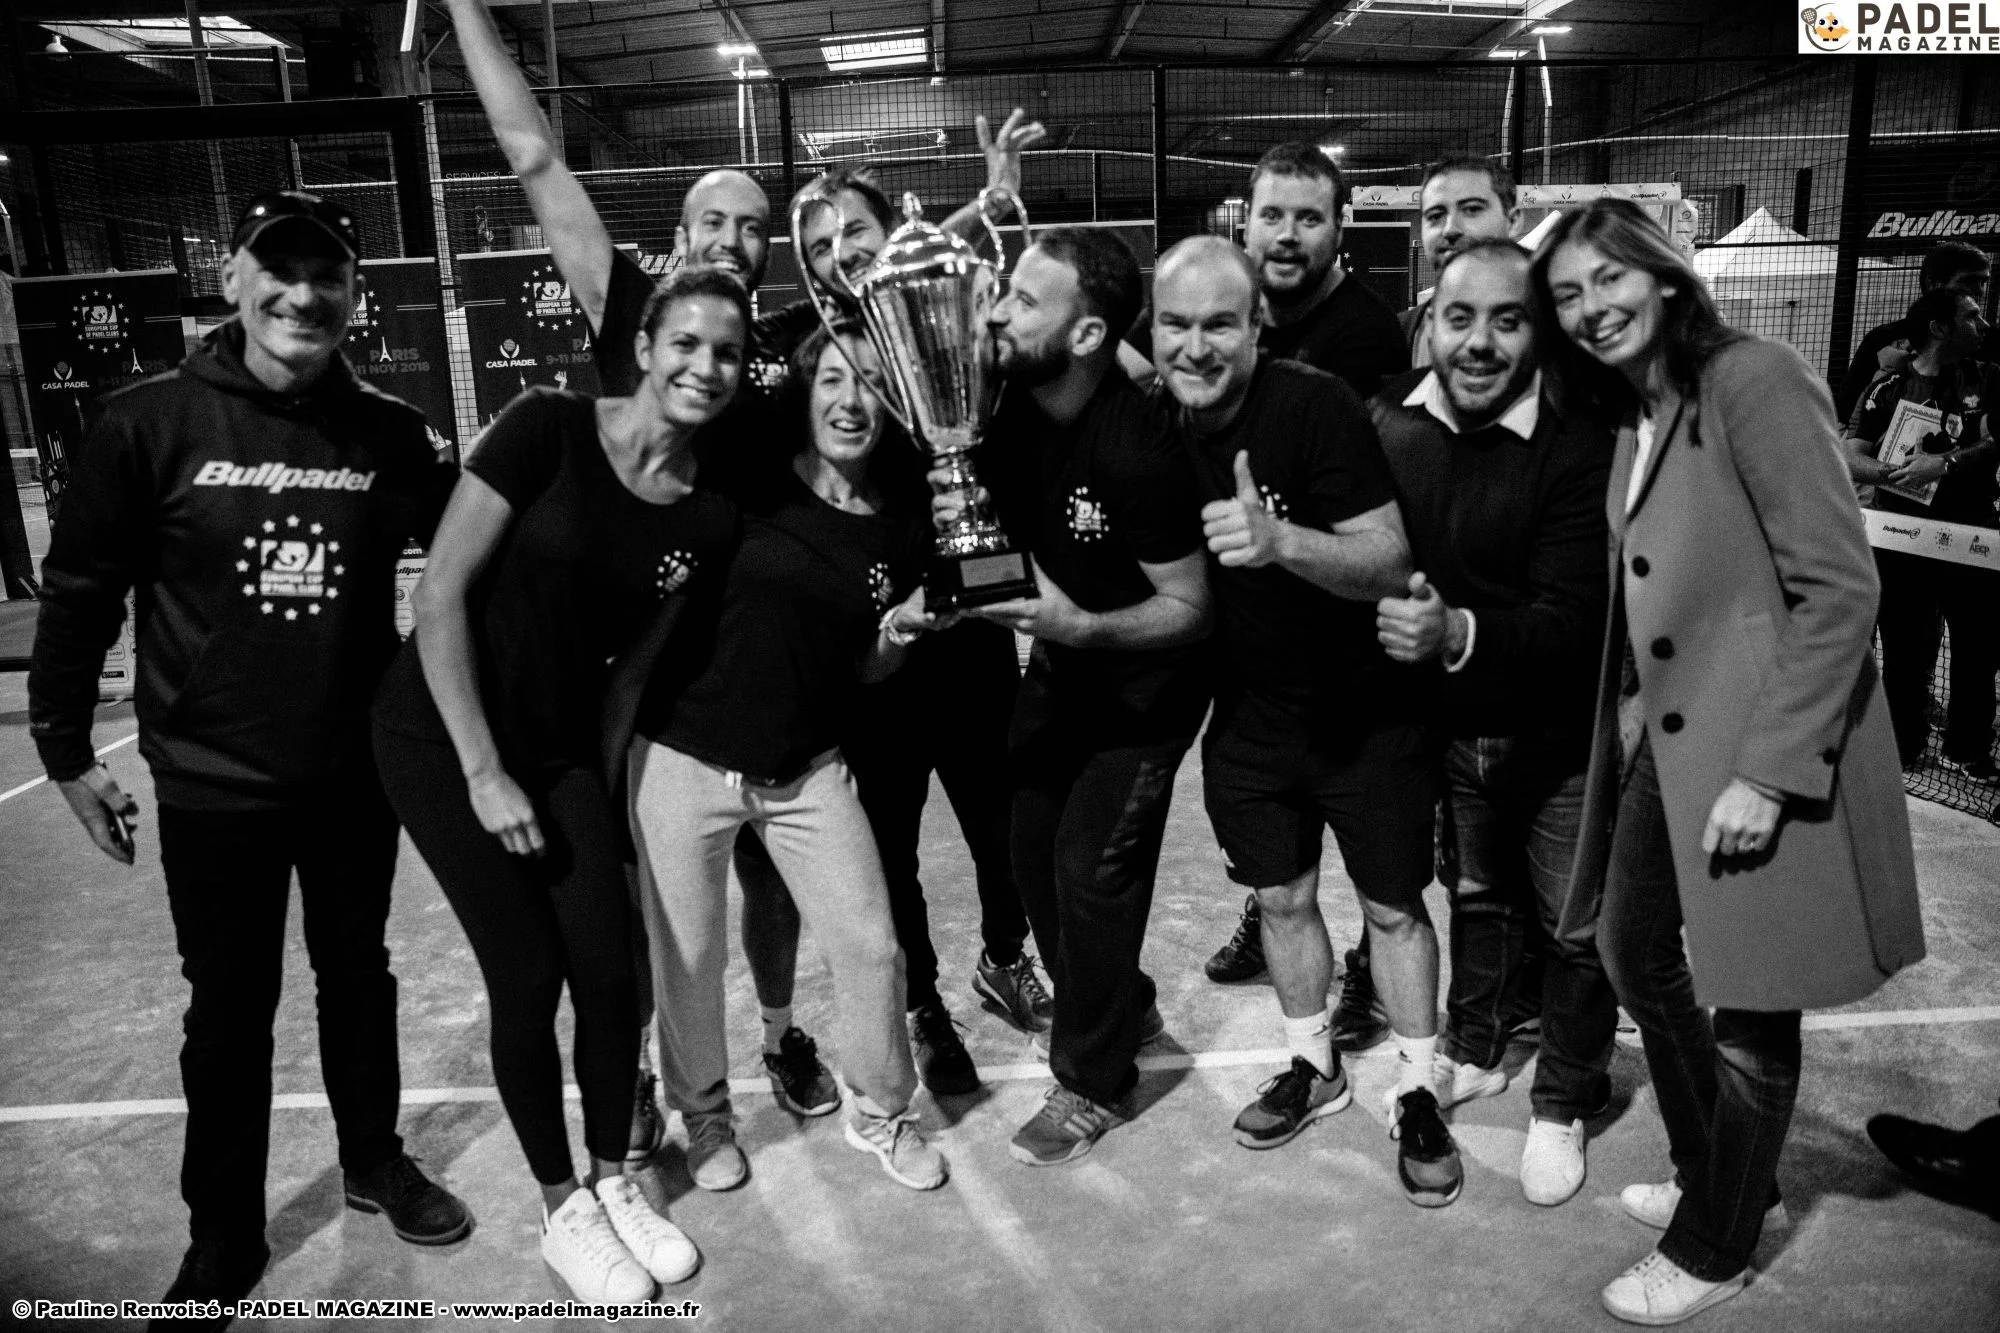 房子 Padel / Padel 法国分销赢得欧元 Padel 杯2018